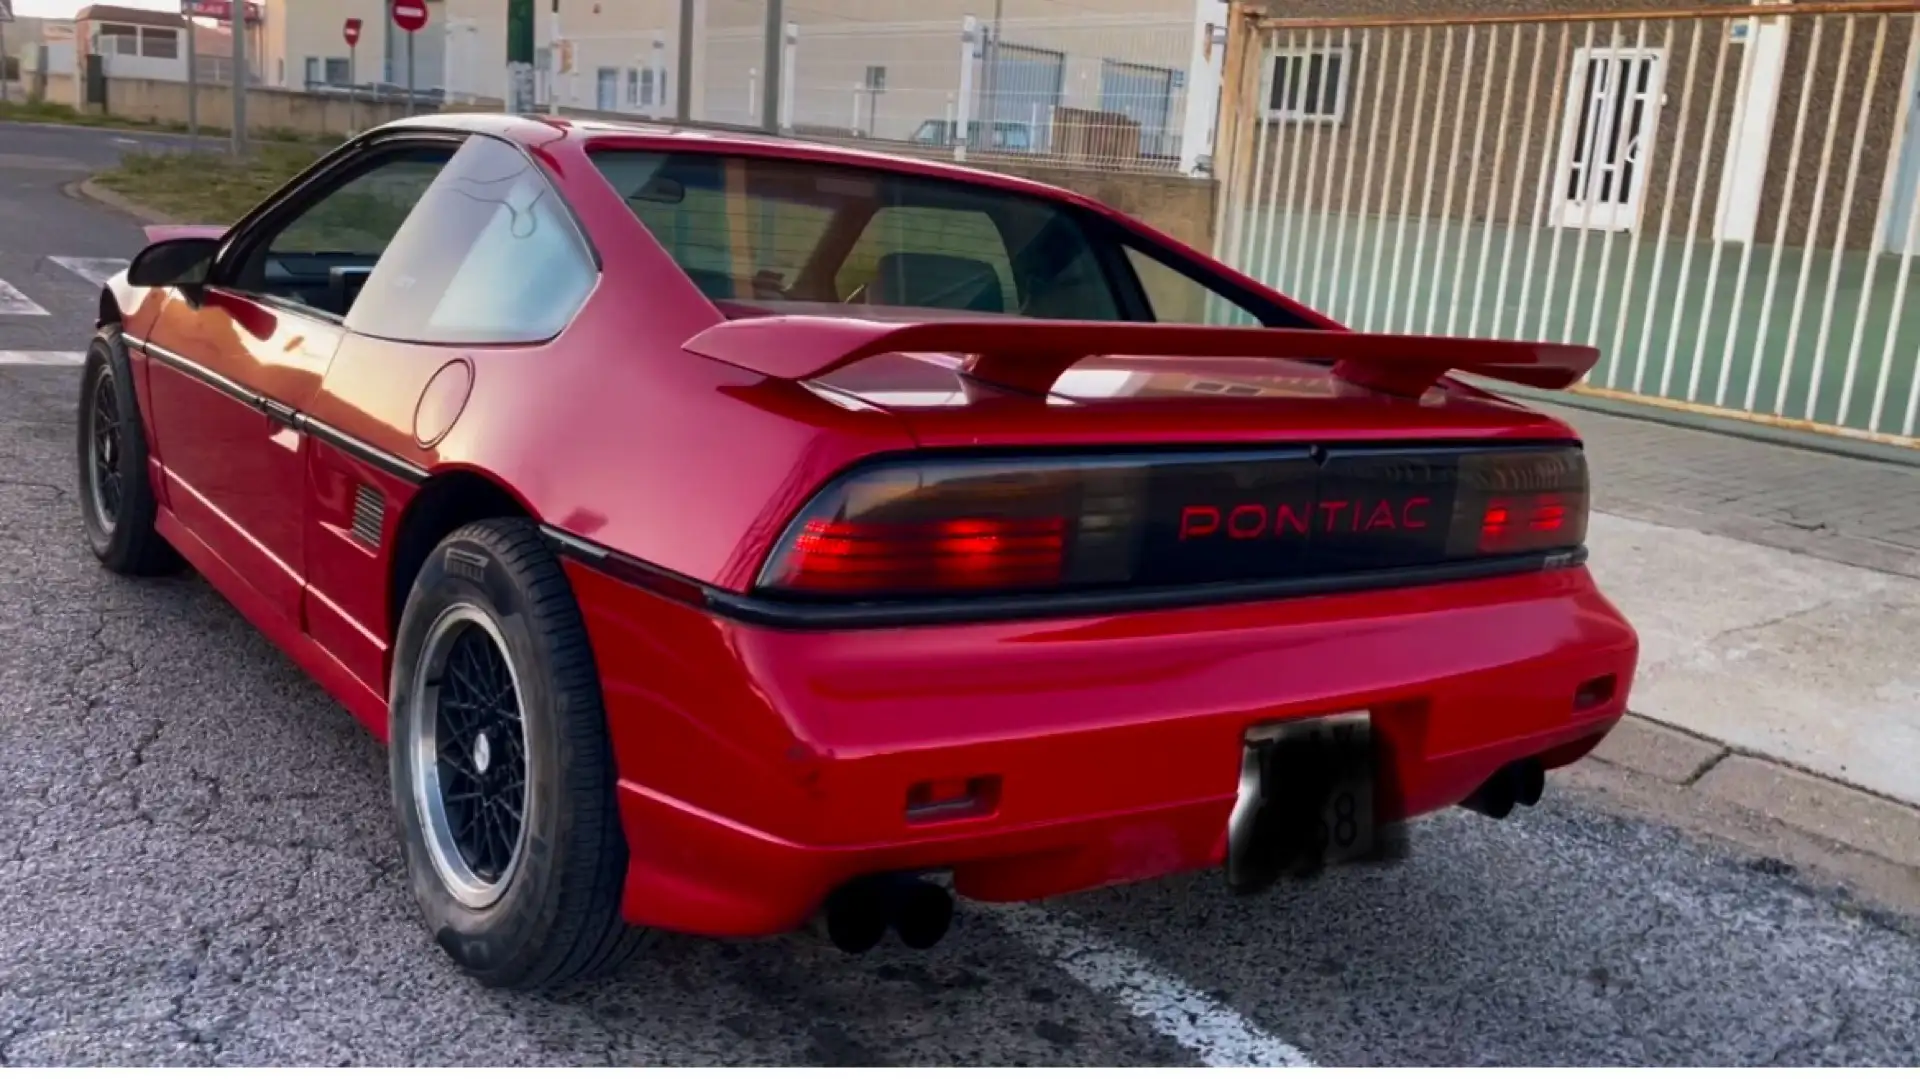 Pontiac Fiero pontiac fiero GT Red - 2